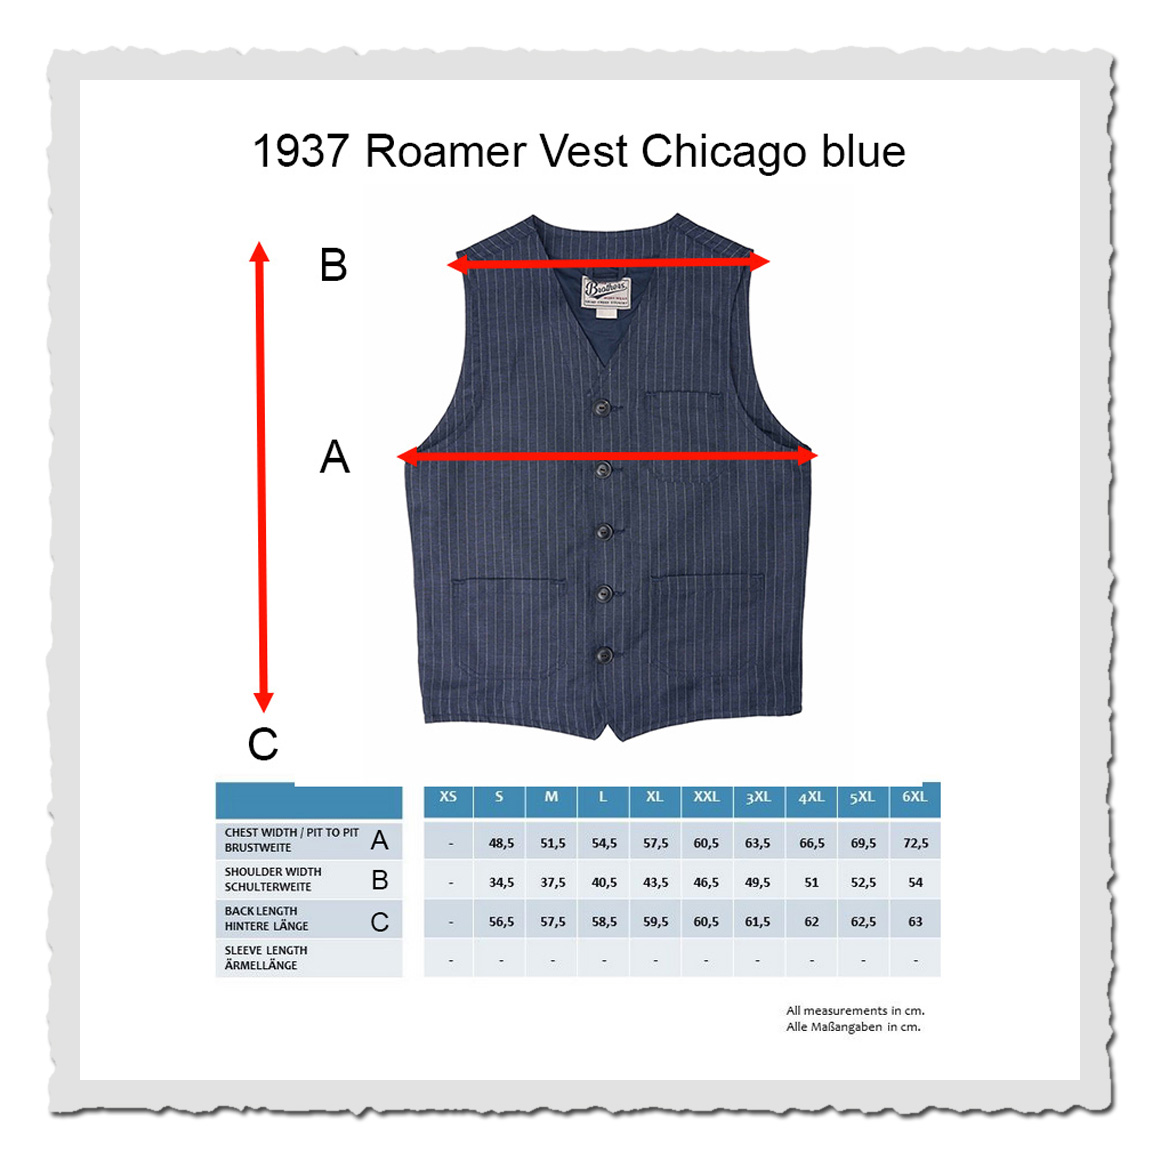 1937 Roamer Vest Chicago blue